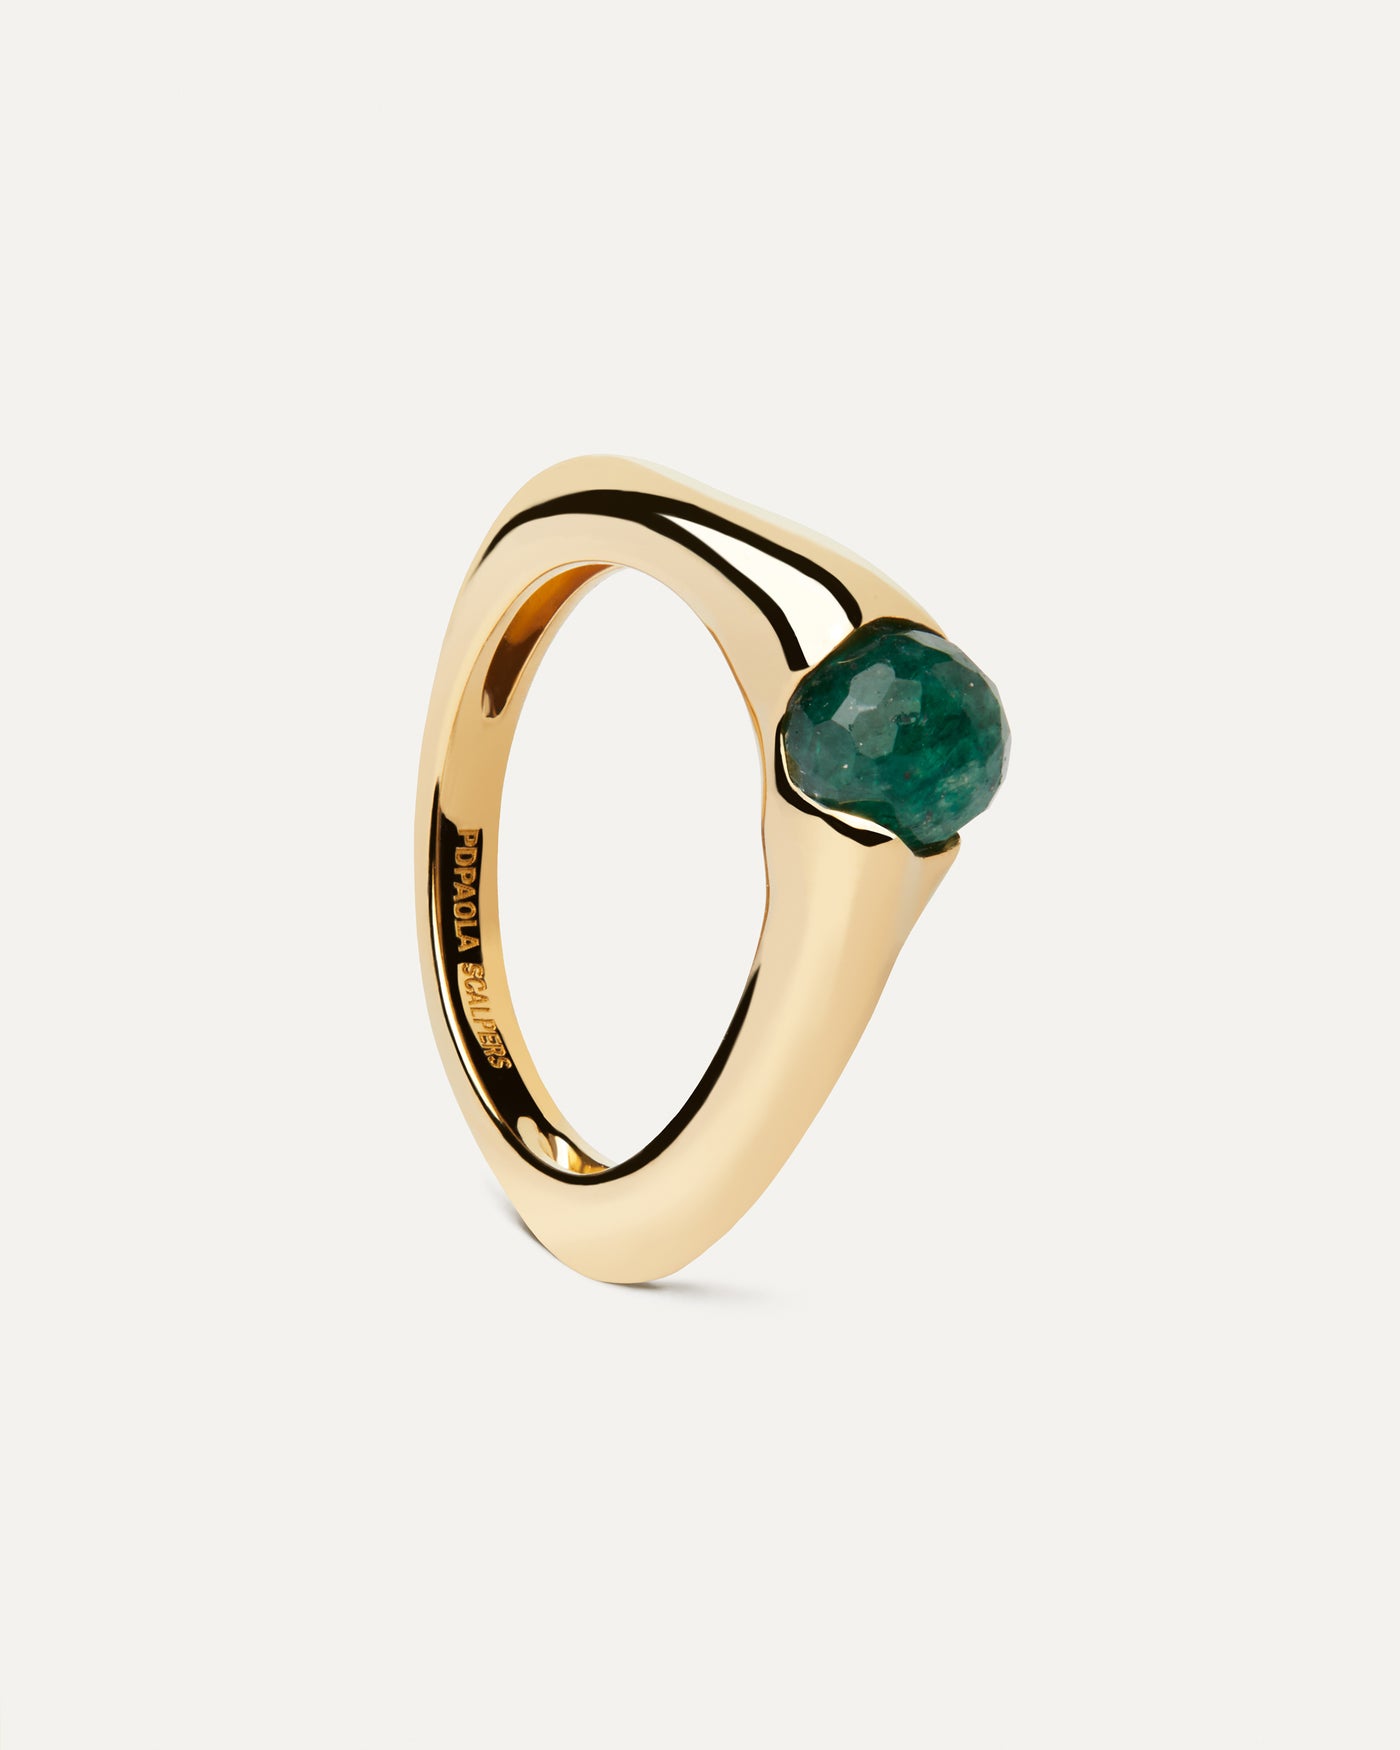 Oasis Ring. Vergoldeter Ring in organischer Form mit einem grüner aventurin Edelstein im Rundschliff. Erhalten Sie die neuesten Produkte von PDPAOLA. Geben Sie Ihre Bestellung sicher auf und erhalten Sie diesen Bestseller.